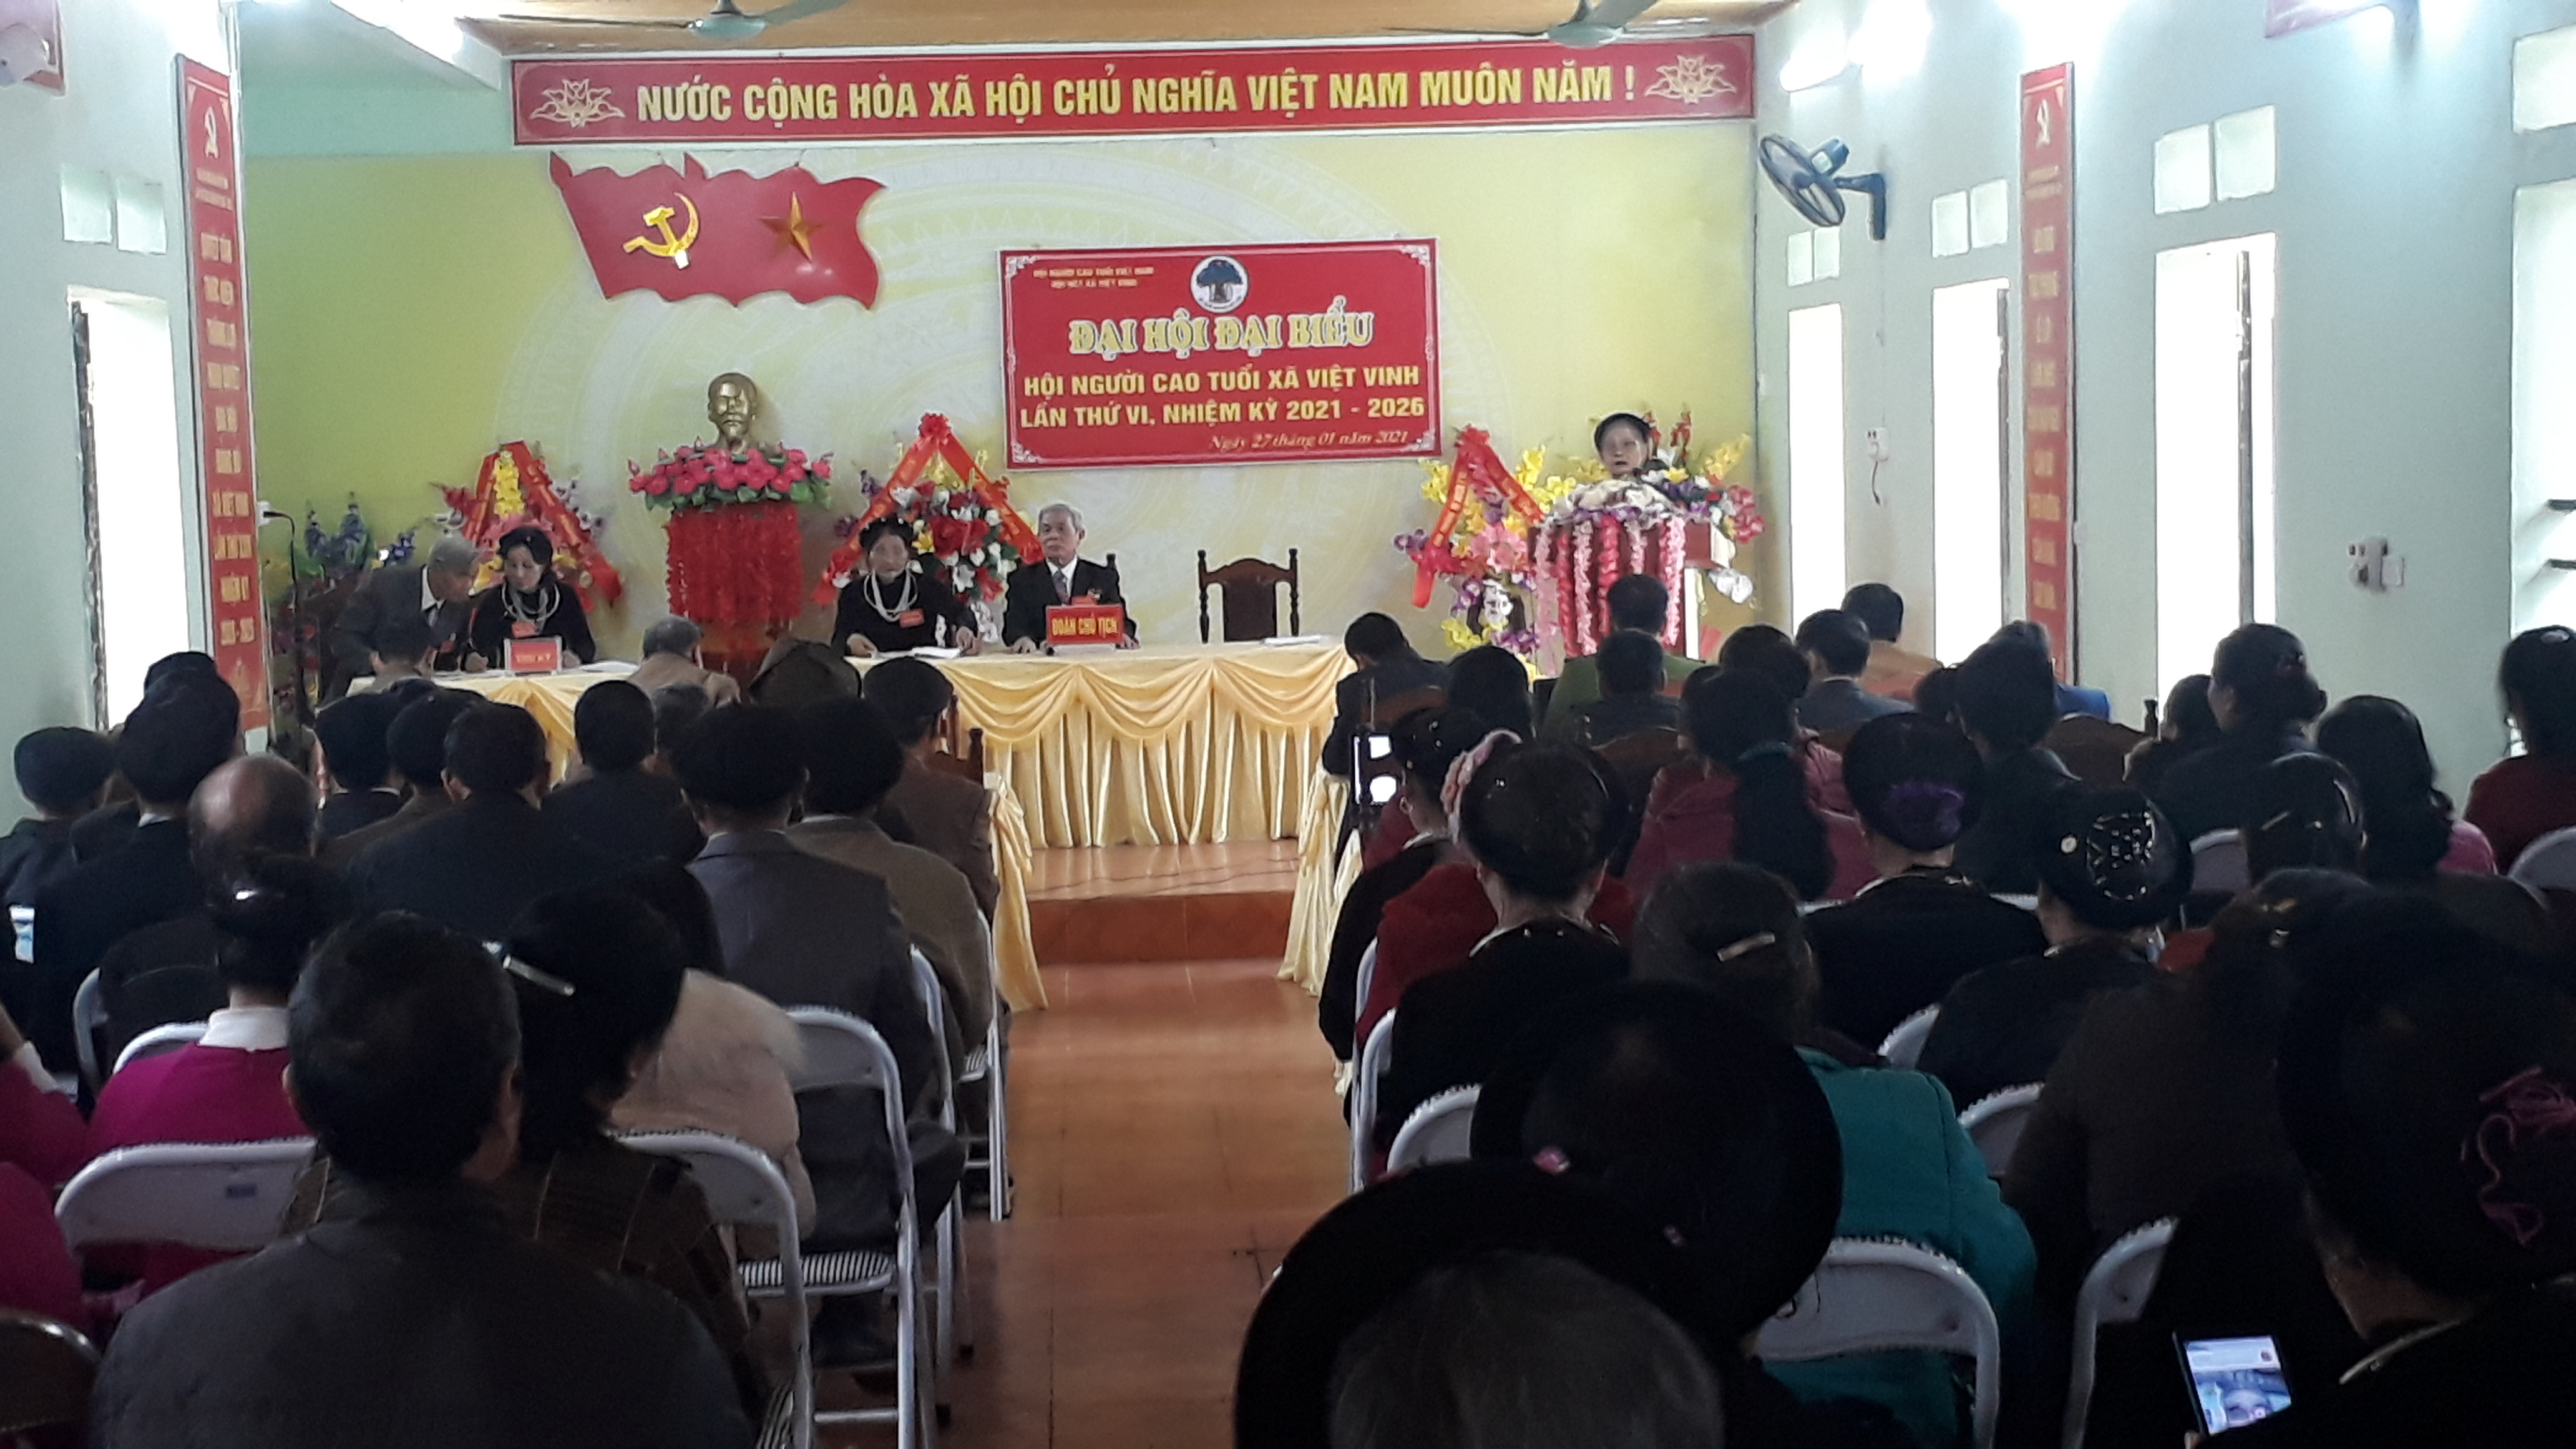 Đại hội Người cao tuổi xã Việt Vinh lần thứ VI, nhiệm kỳ 2021-2026